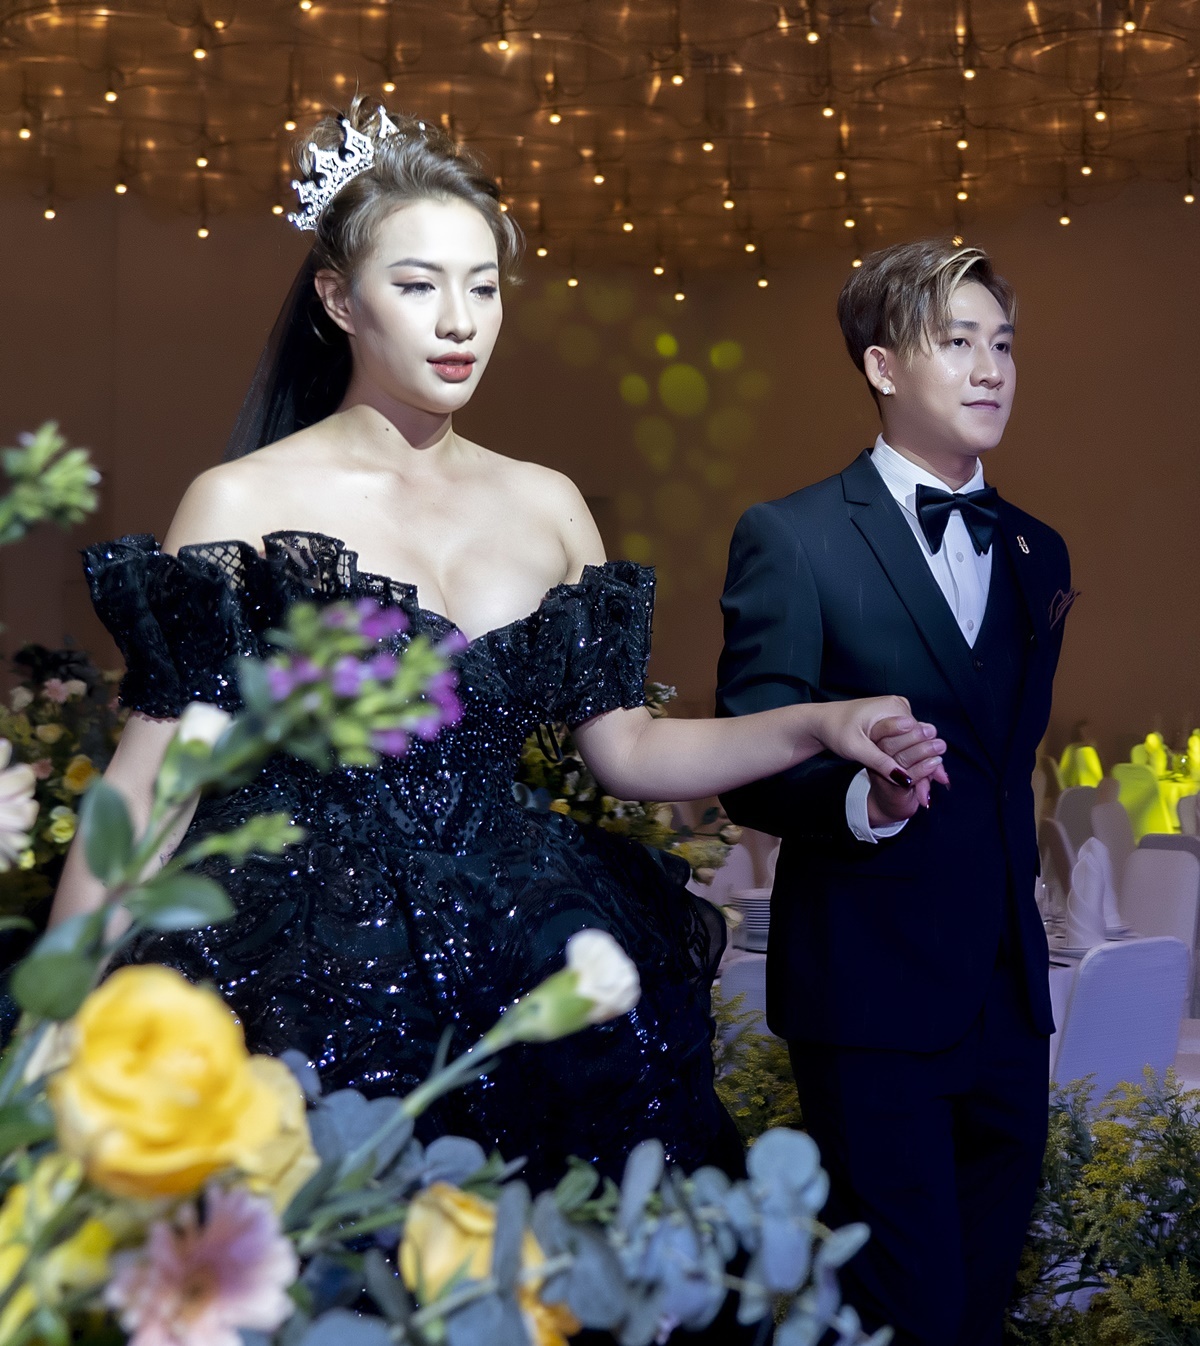 Hồ Gia Hùng và người mẫu Thúy An tổ chức hôn lễ vào hồi tháng 3 năm nay sau khoảng thời gian 7 năm hẹn hò